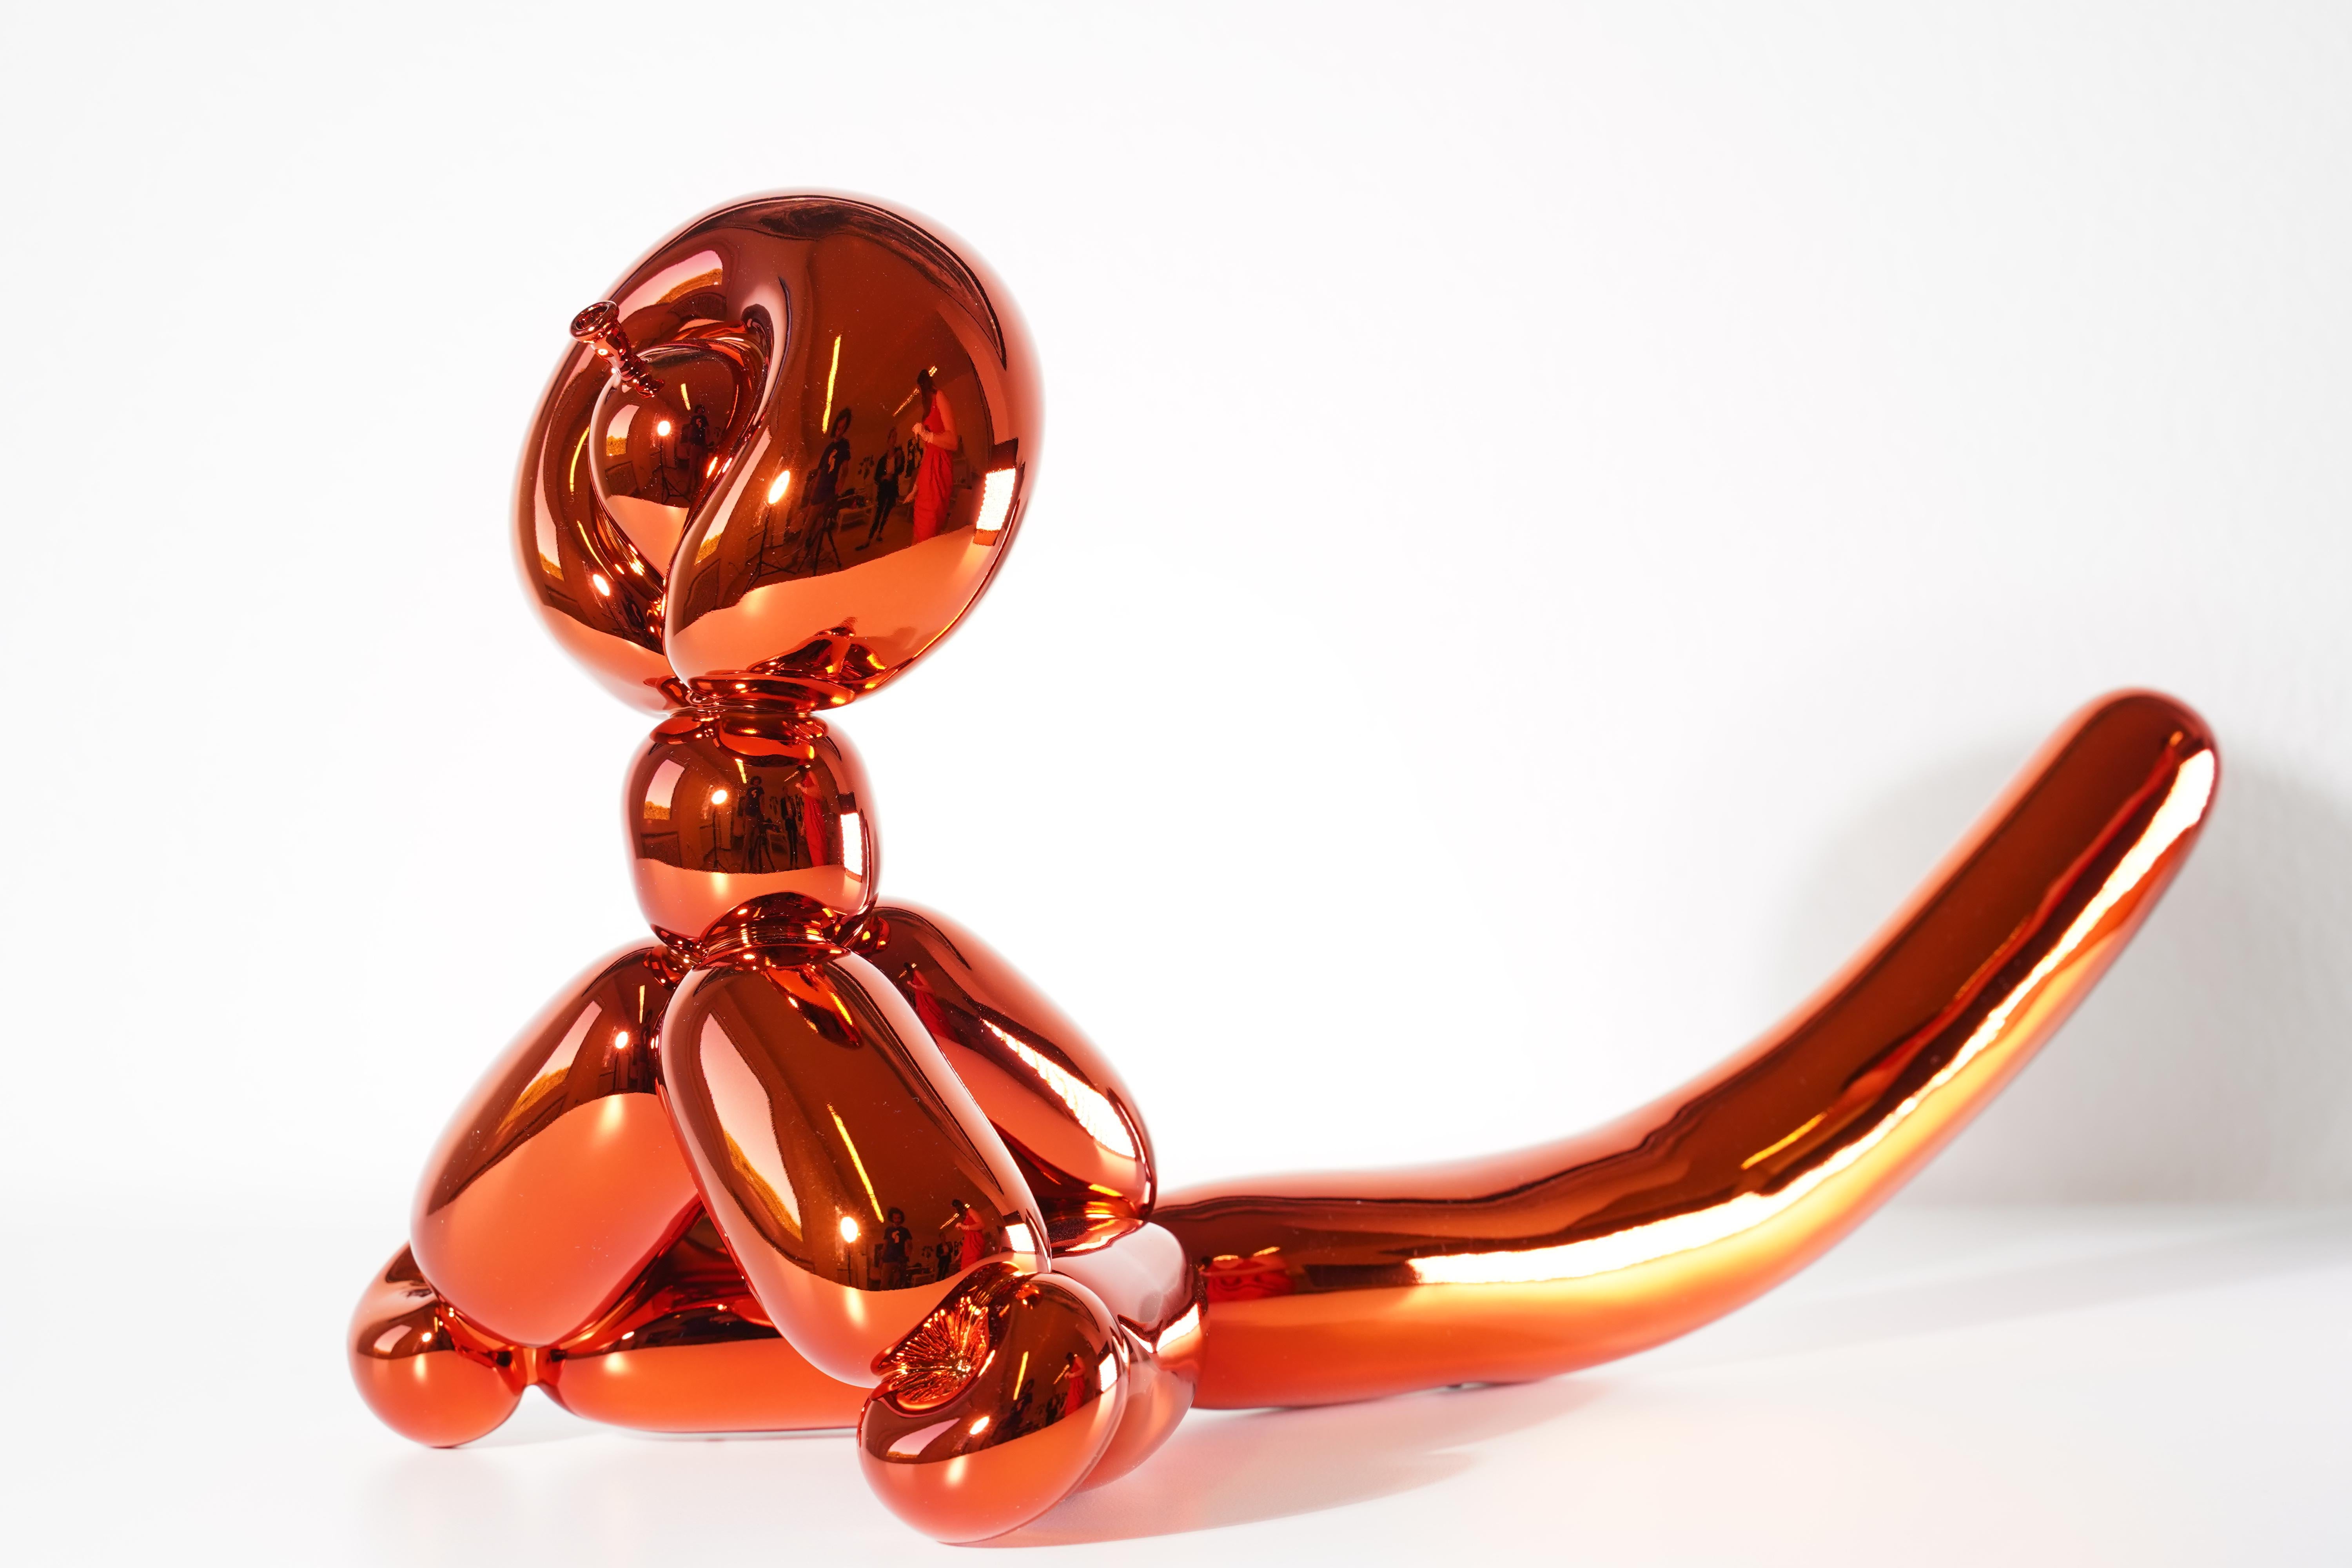 Balloon Monkey (Orange) - Jeff Koons, 21e siècle, contemporain, porcelaine, sculpture, décoration, édition limitée

Porcelaine de Limoges avec revêtement chromatique métallisé
Edition de 999
Signé et numéroté
En parfait état, tel qu'il a été acquis